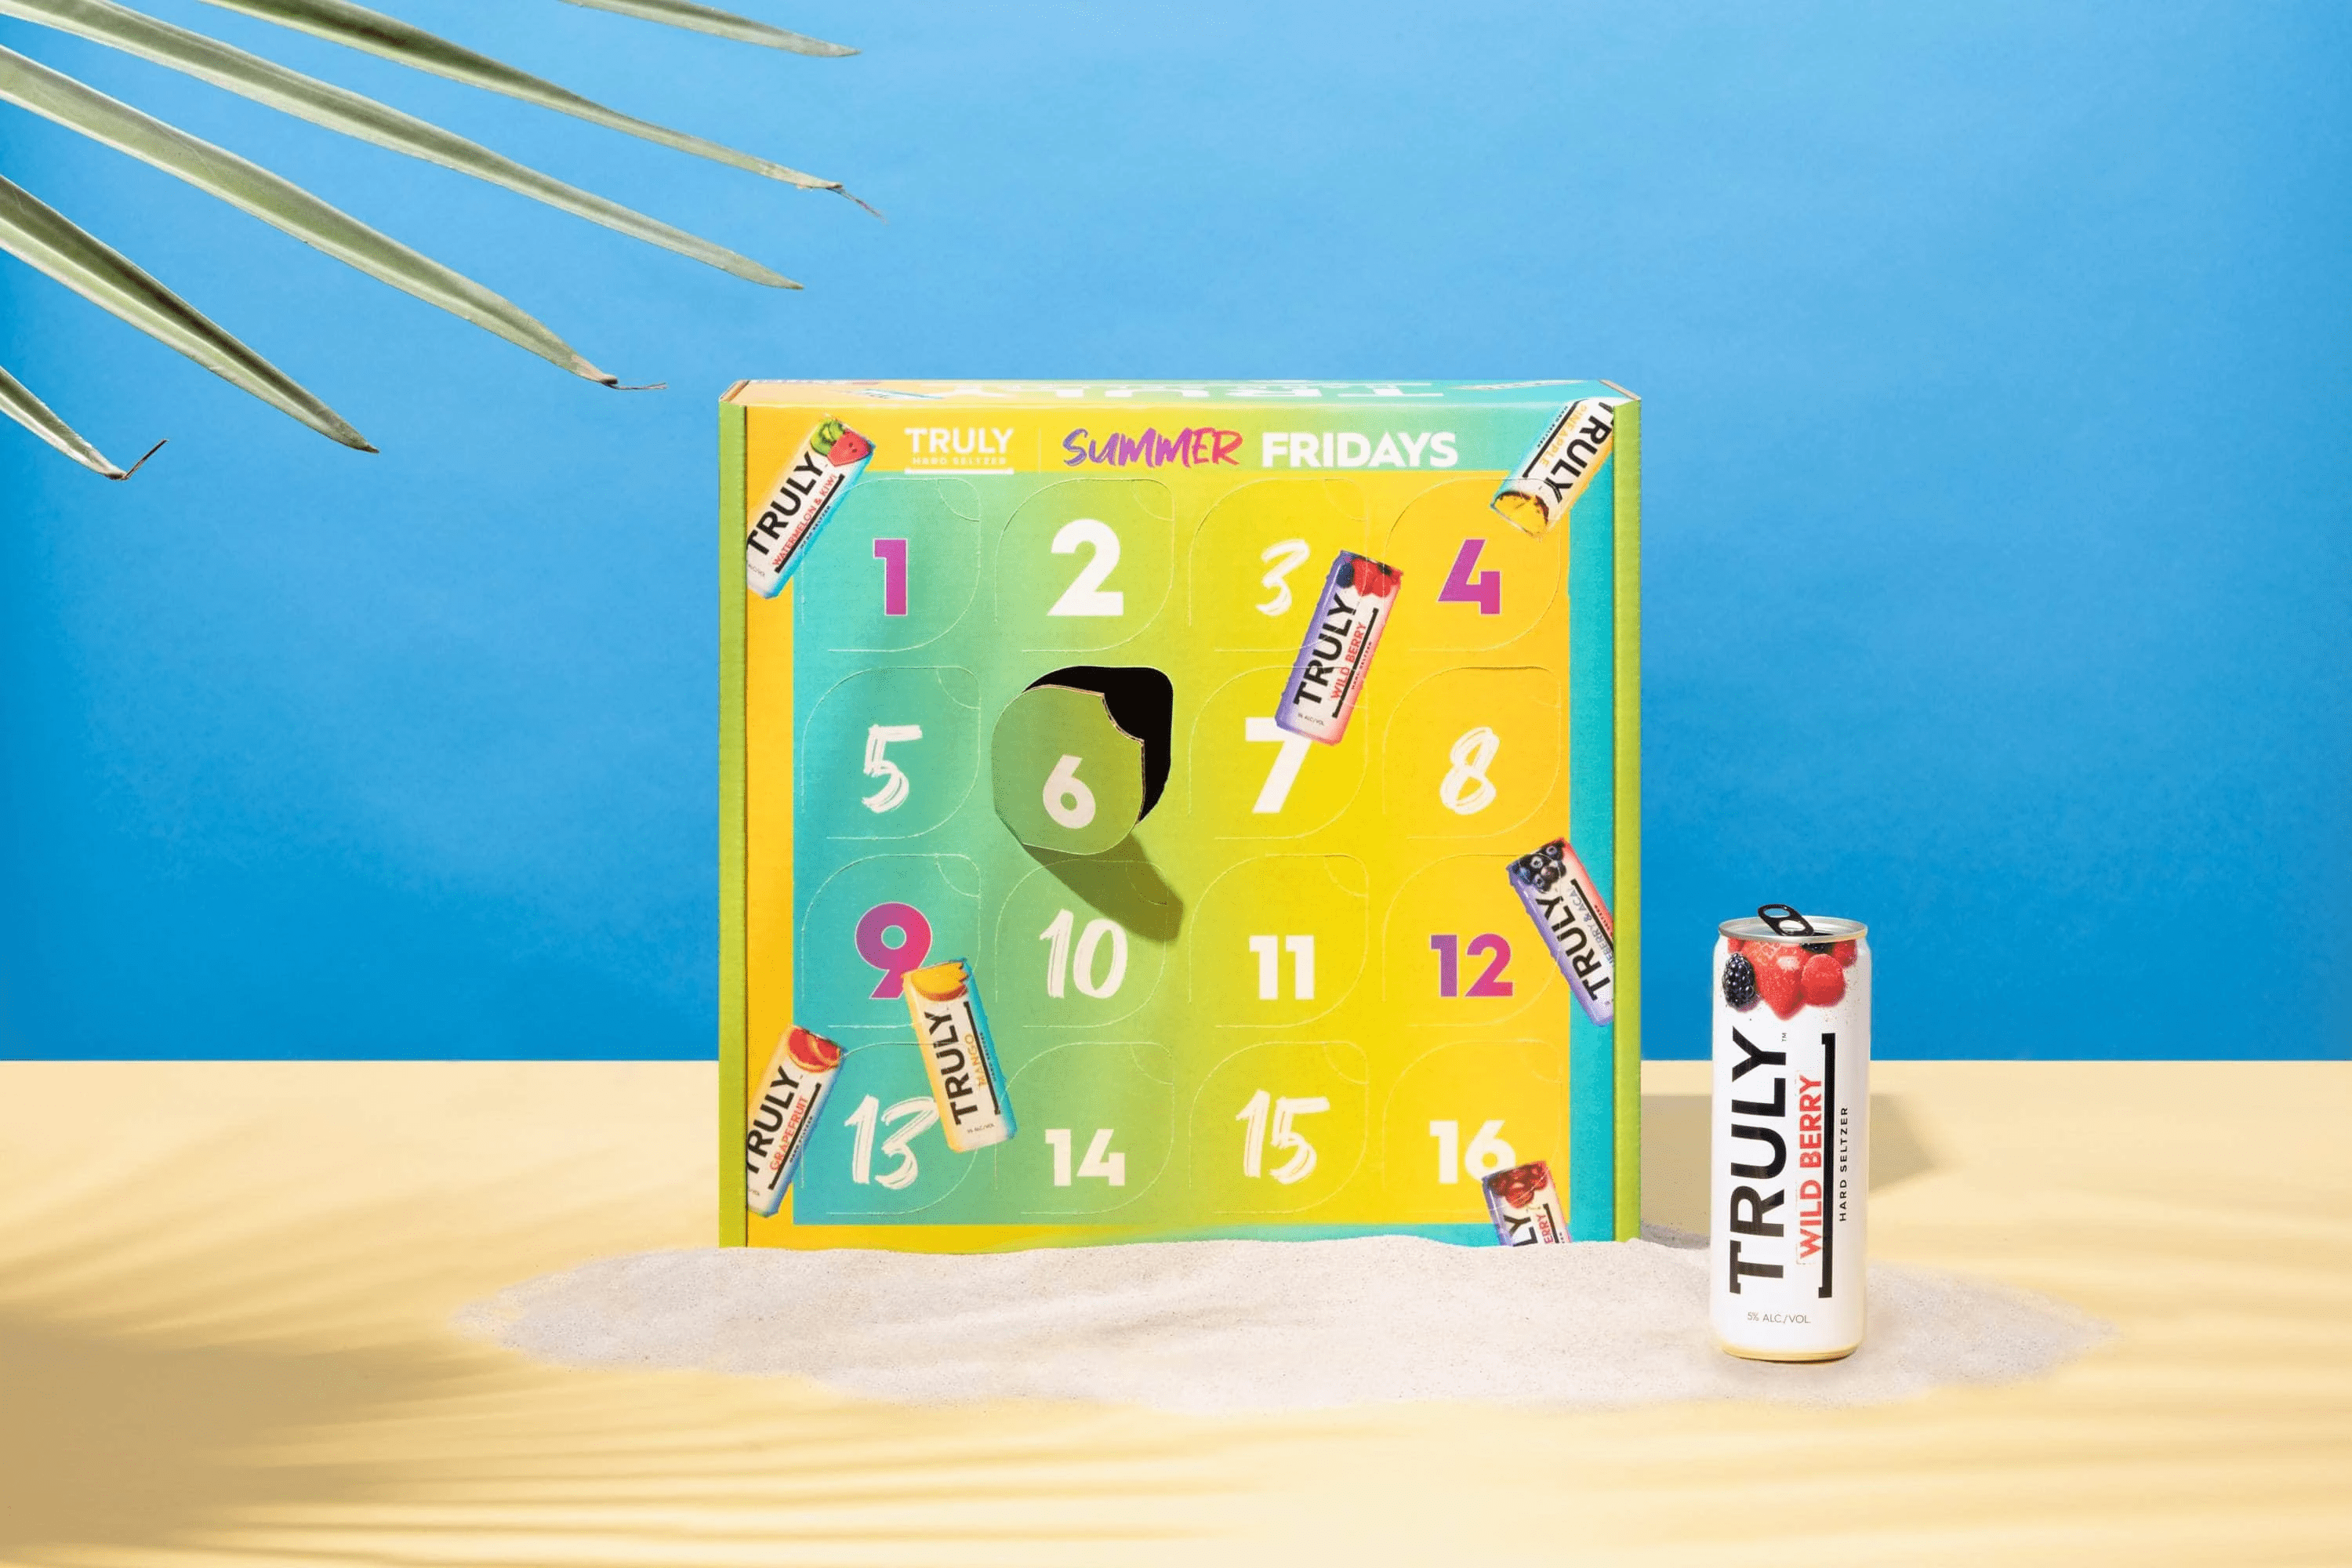 2020 Truly Summer Fridays Hard Seltzer Advent Calendar Available Now